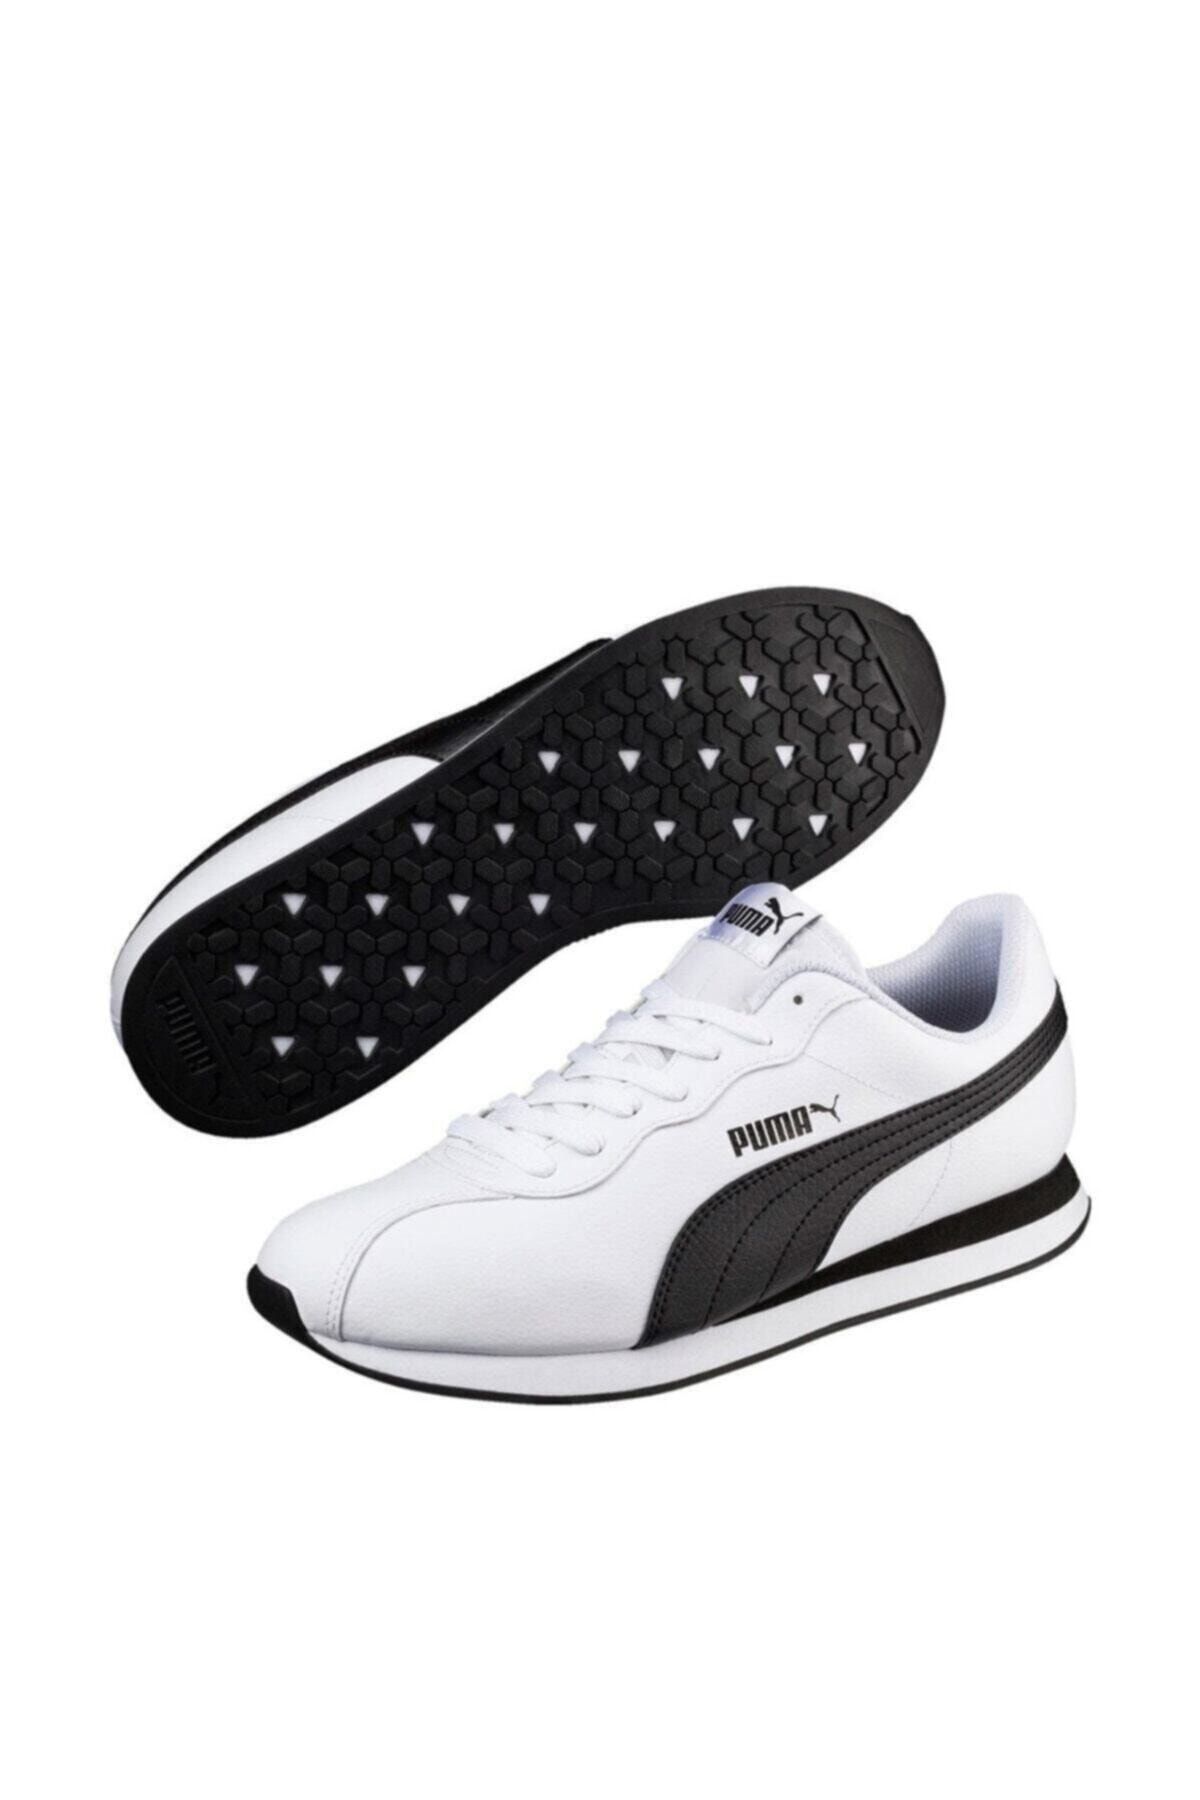 Puma 366962 Turin Erkek Spor Ayakkabı Beyaz